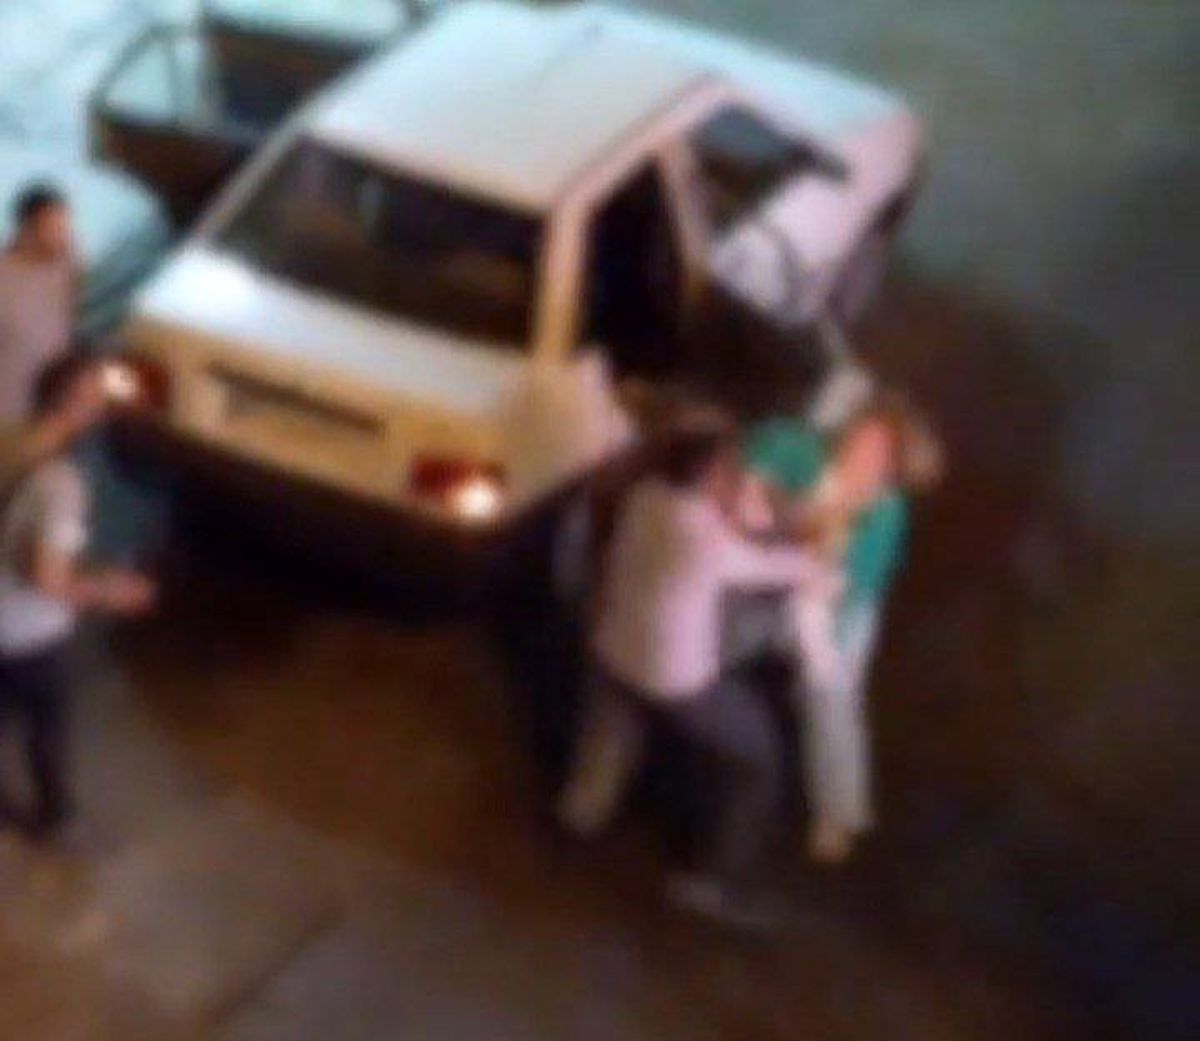 درگیری راننده اسنپ با زن جوان سر حجاب بود؟/ توضیحات پلیس درباره فیلم جنجالی